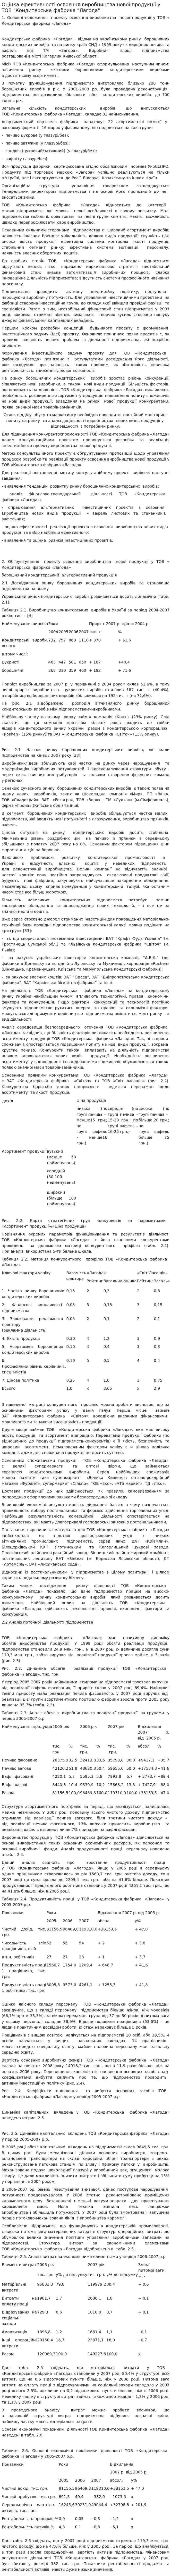 Оцінка ефективності освоєння виробництва нової продукції у ТОВ "Кондитерська фабрика "Лагода"